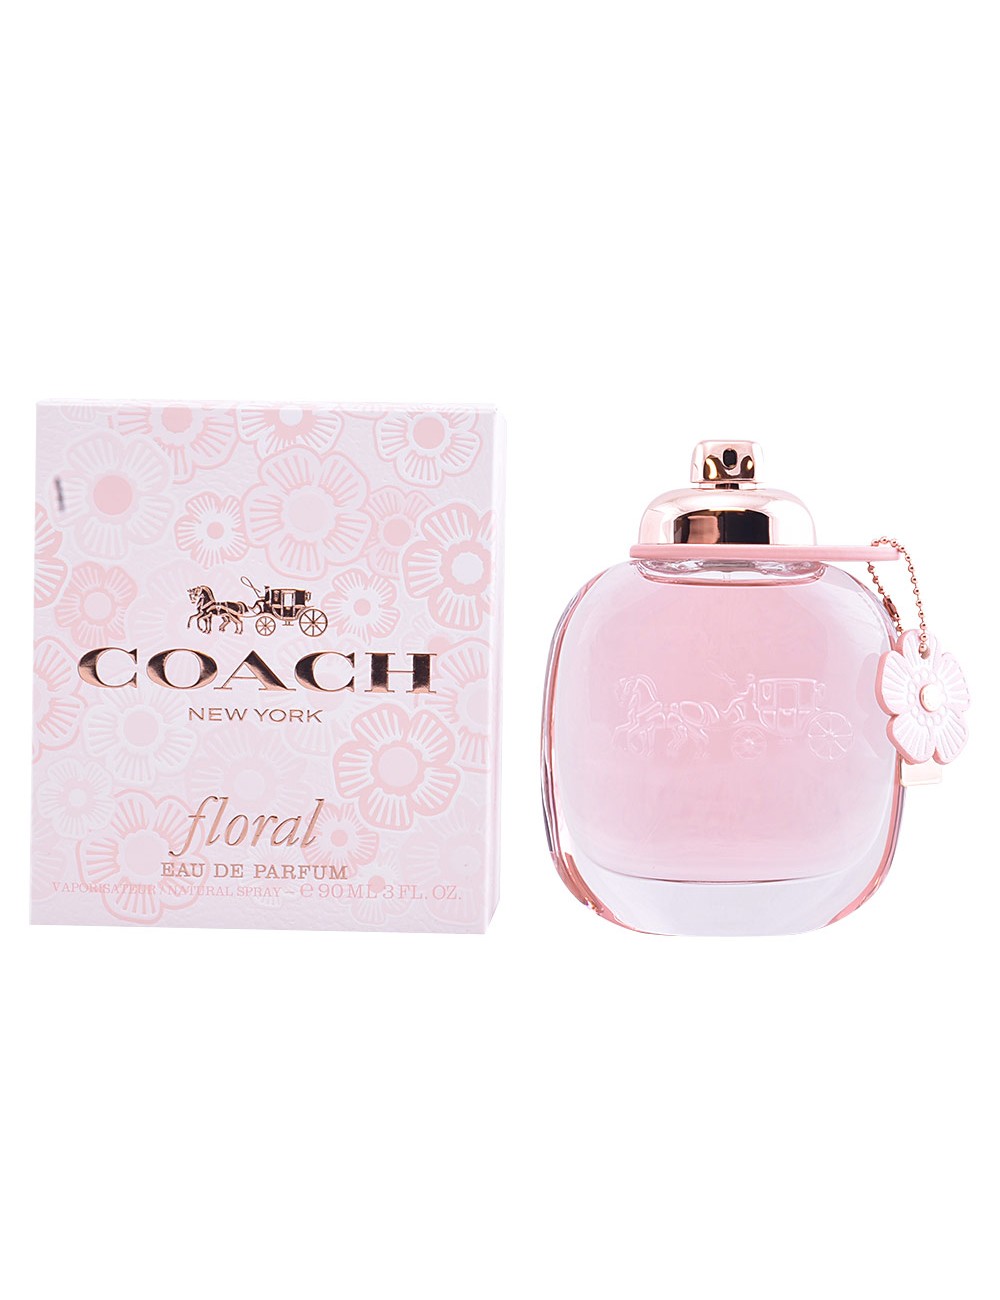 COACH FLORAL eau de parfum vaporisateur 90 ml NE100615